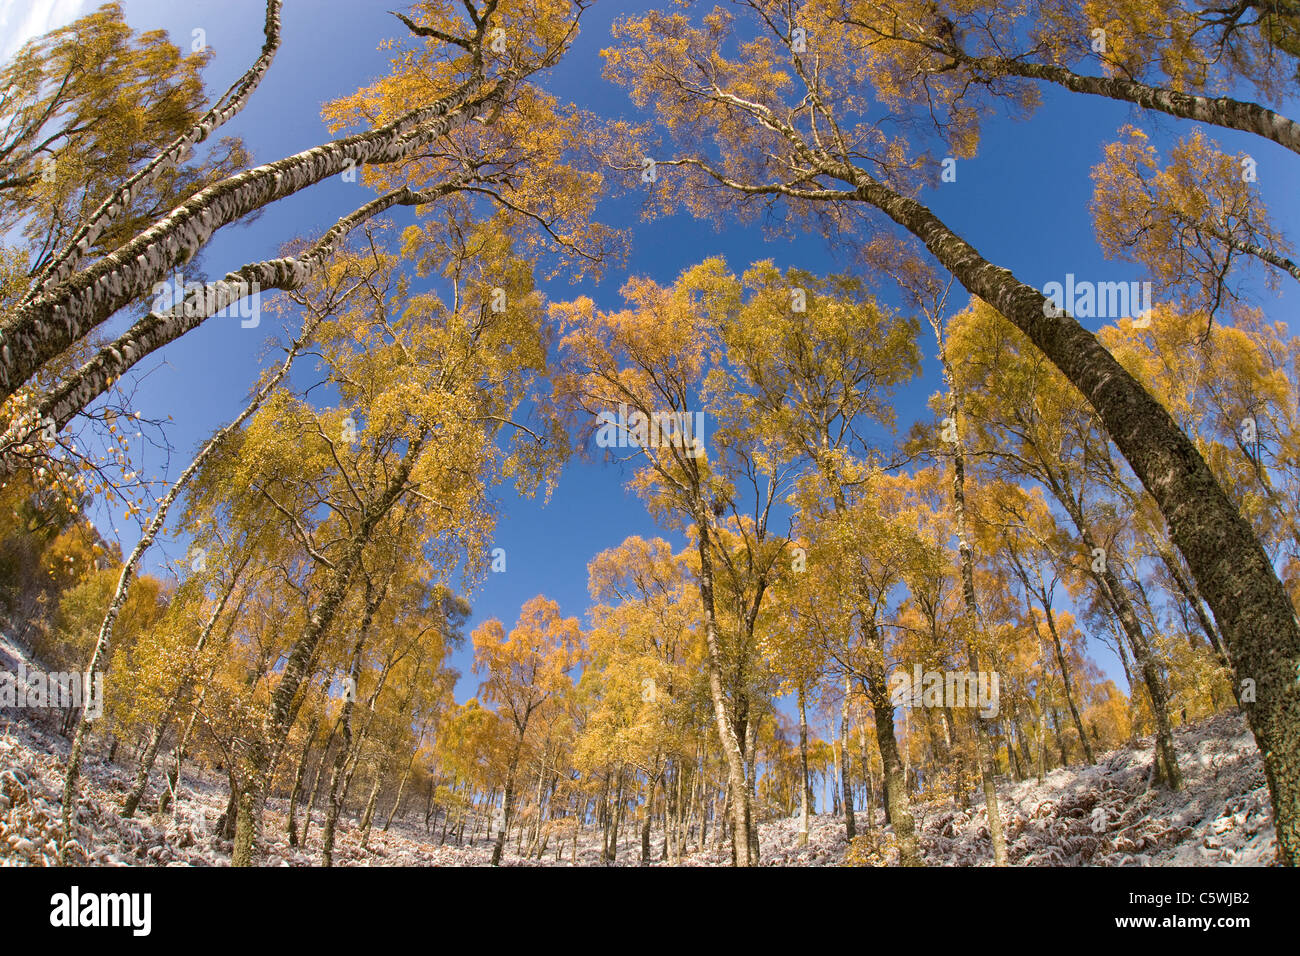 Le bouleau verruqueux (Betula pendula), de forêt en automne. Craigellachie National Nature Reserve, Ecosse, Grande-Bretagne. Banque D'Images